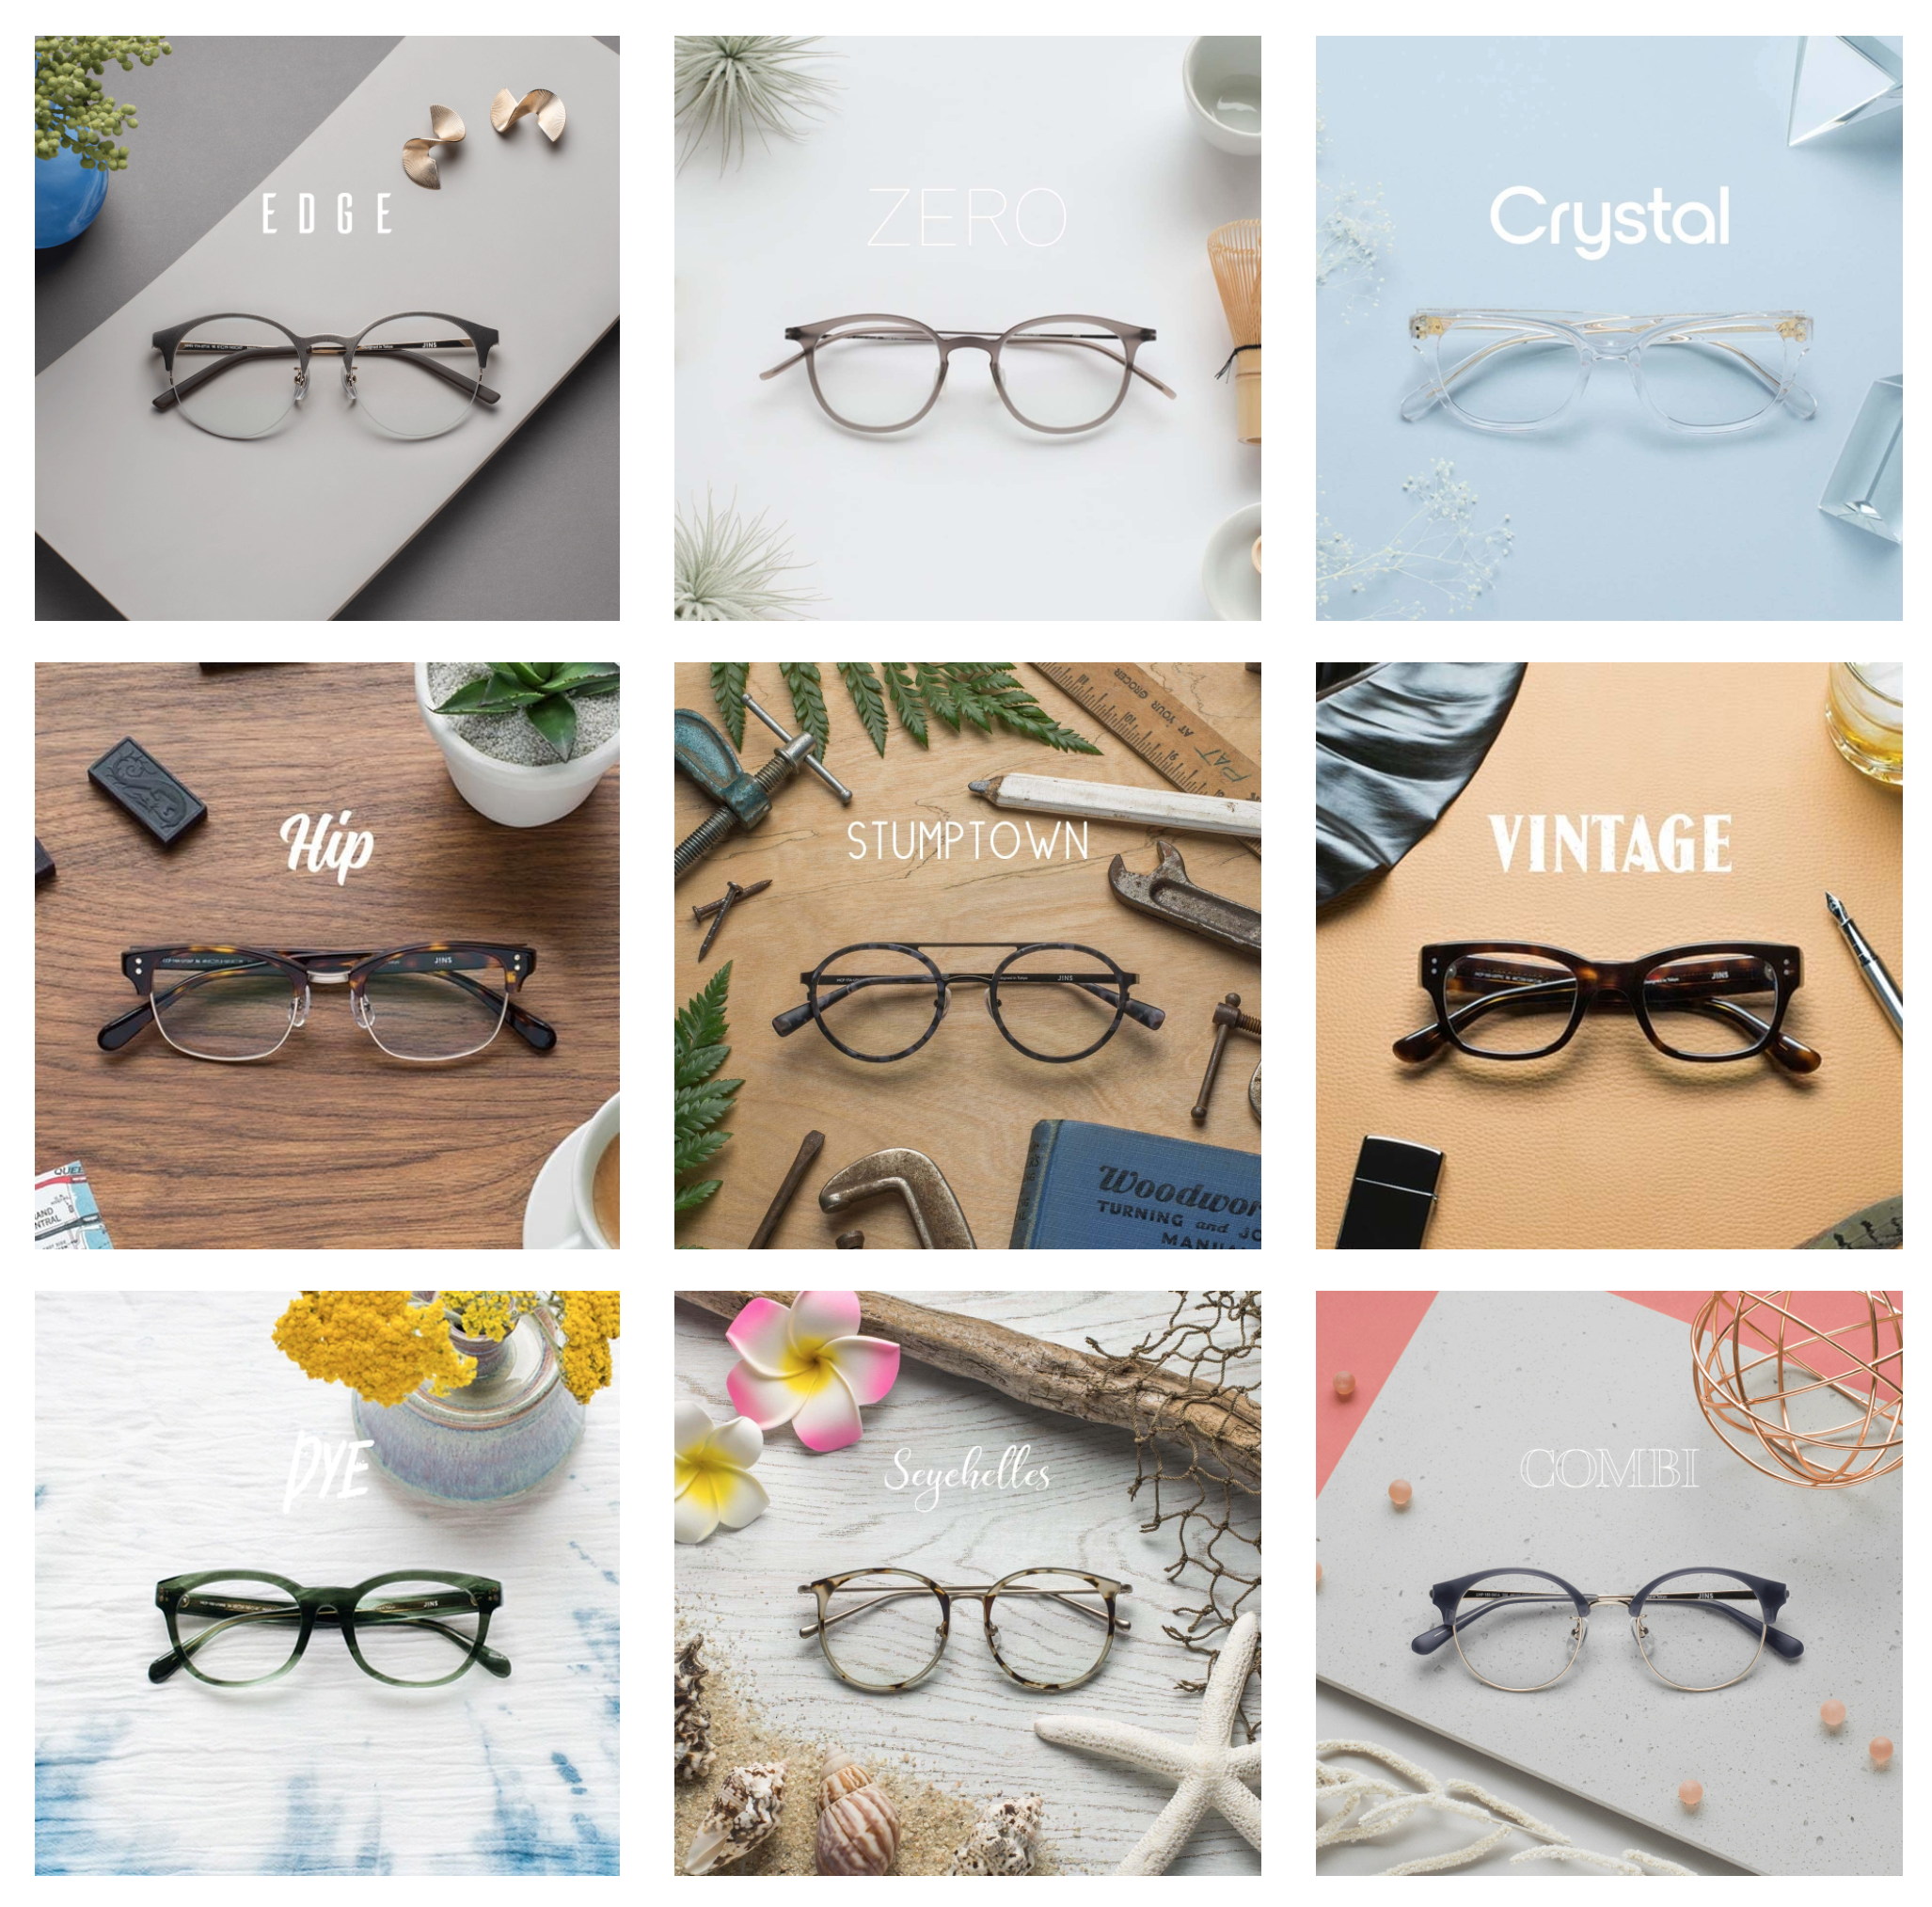 K-ON! Anime-Inspired Eyeglasses Offered in Japan - Interest